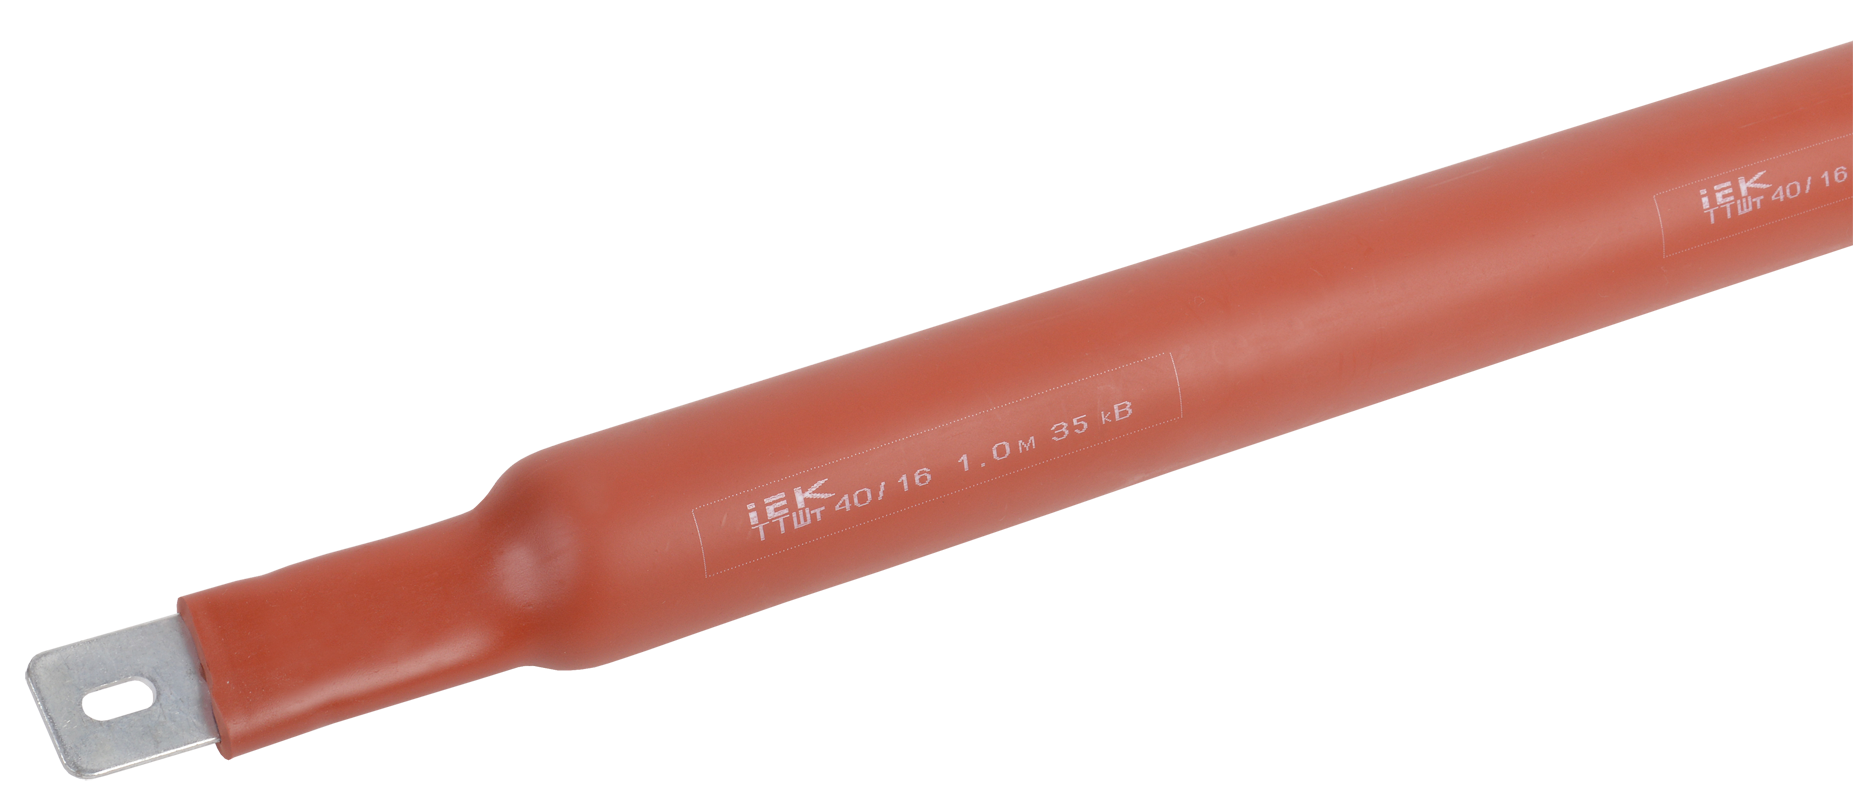 Heat shrinkable tube TTWt 40/16 35 kV 2,5:1 red 1m